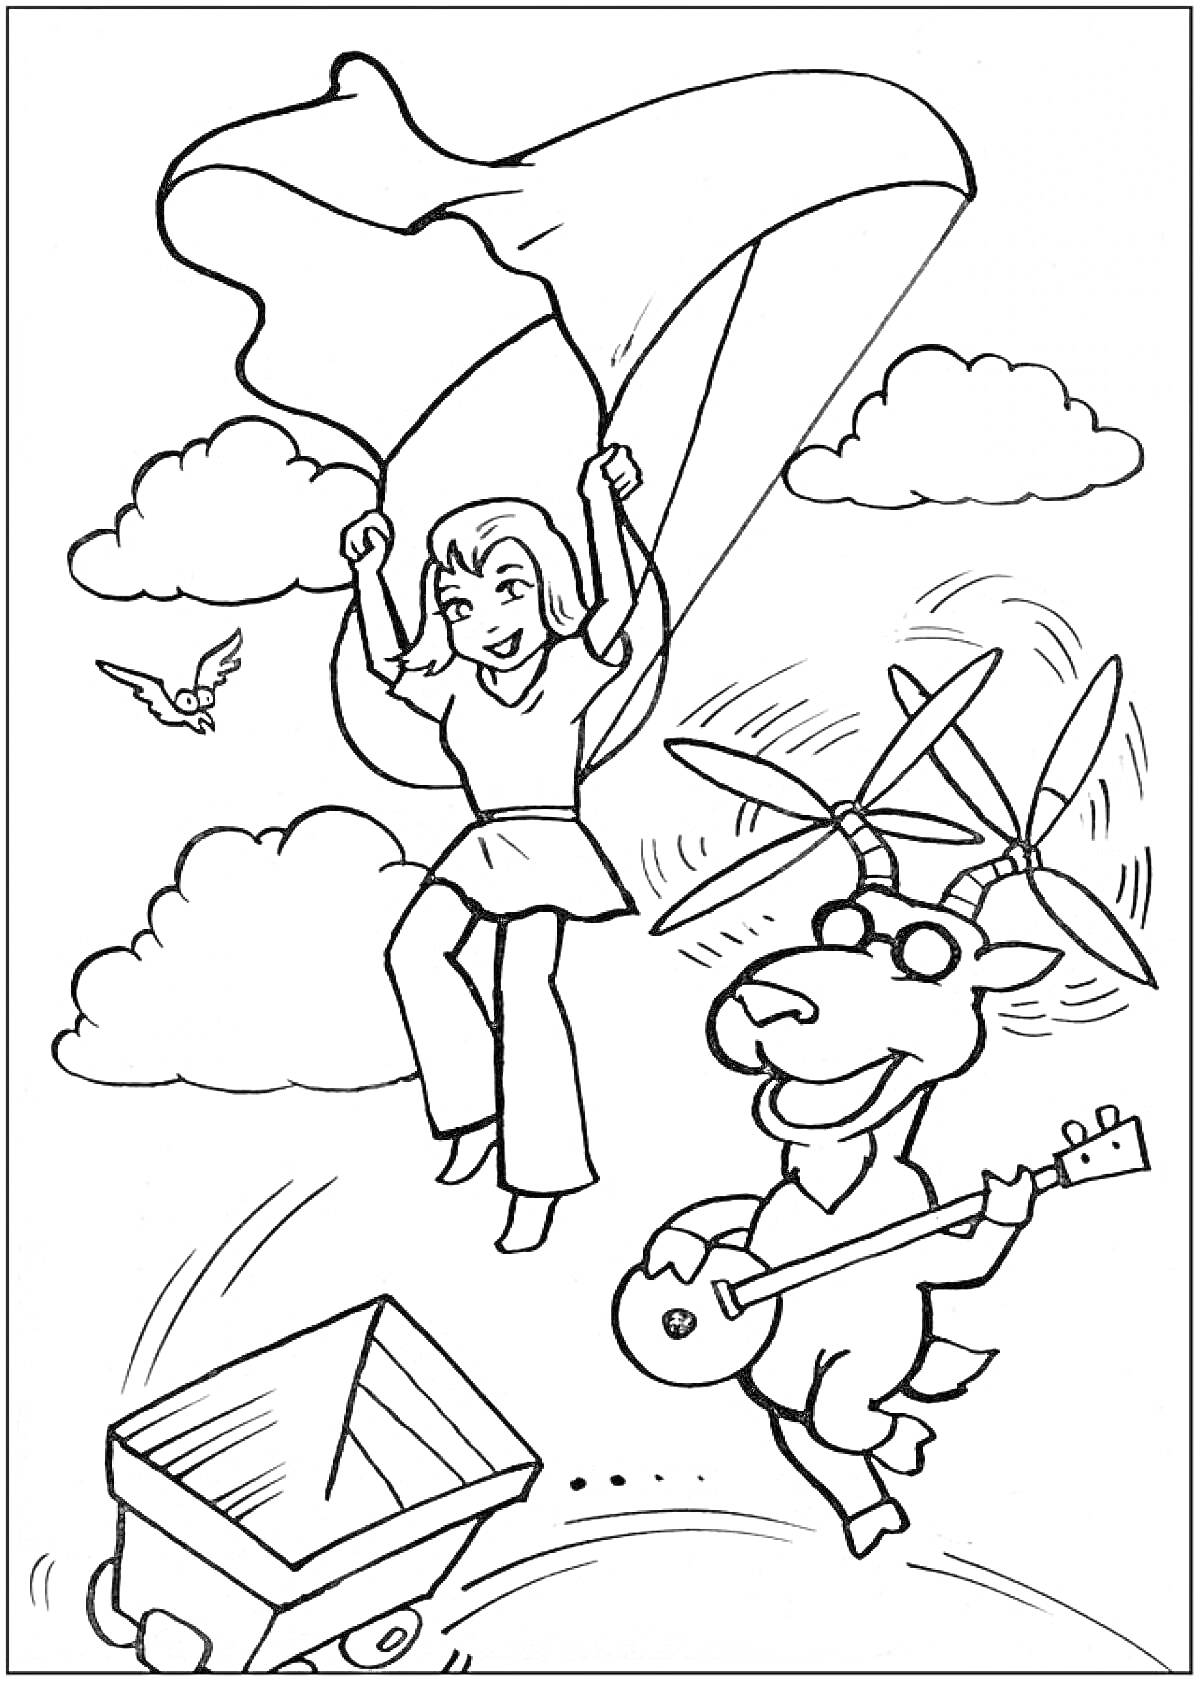 Раскраска Девочка с парашютом, козел с гитарой и вертолётными лопастями, птичка, облака и тележка.